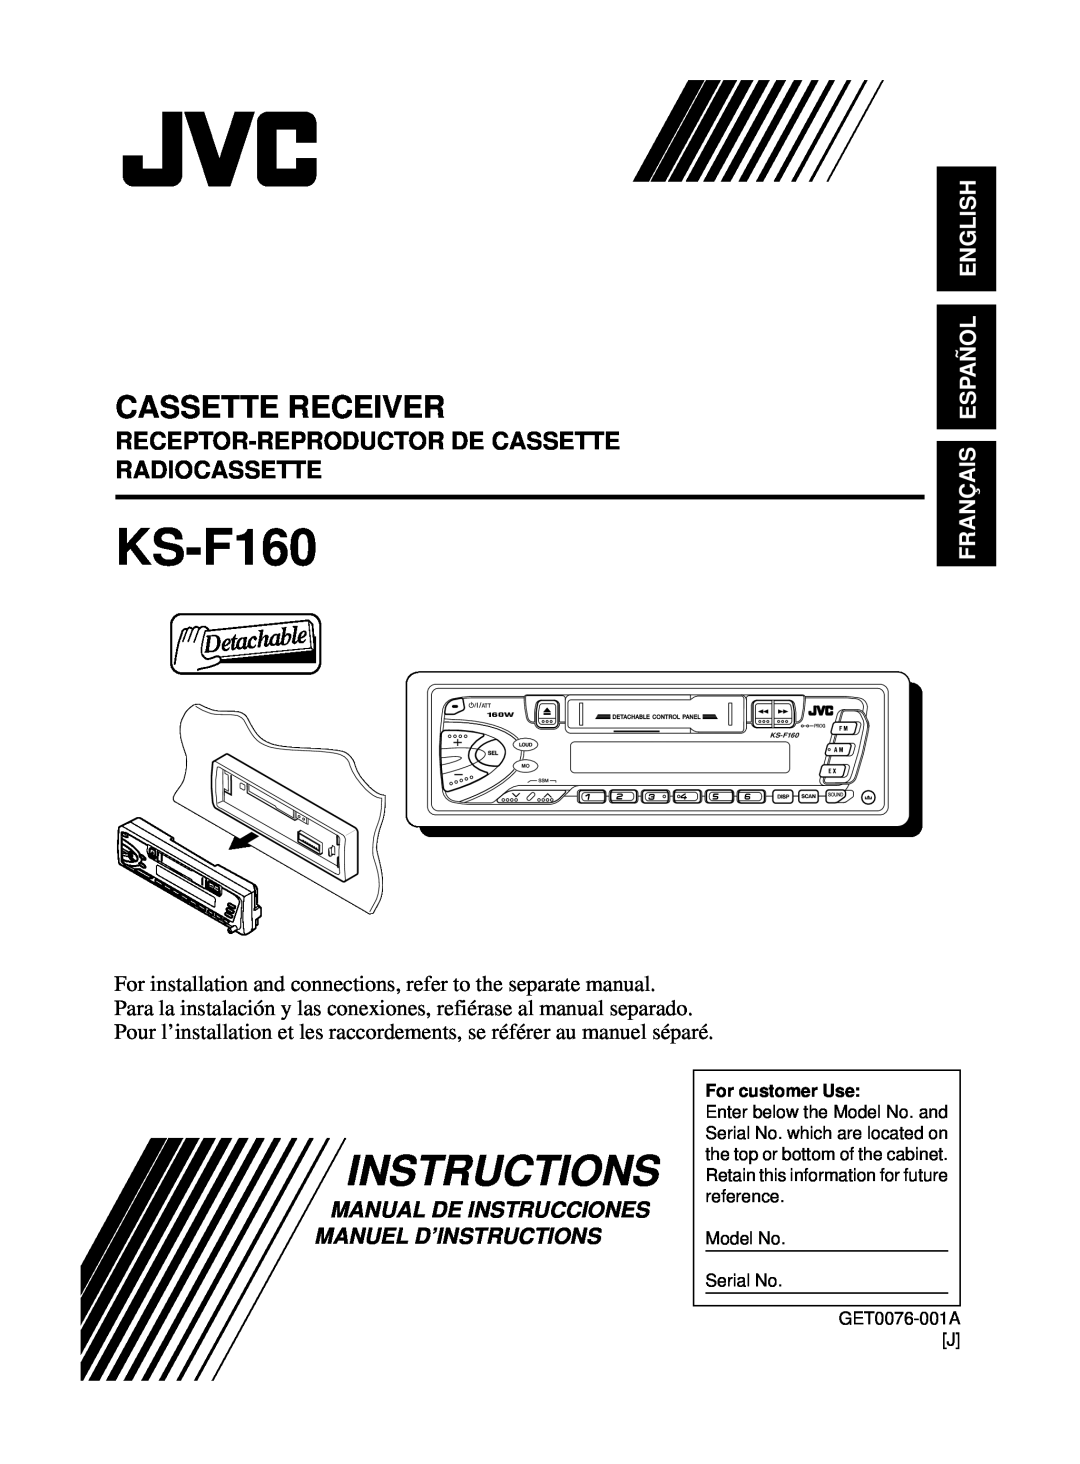 JVC KS-F160 manual Cassette Receiver, Receptor-Reproductorde Cassette Radiocassette, Français Español English 